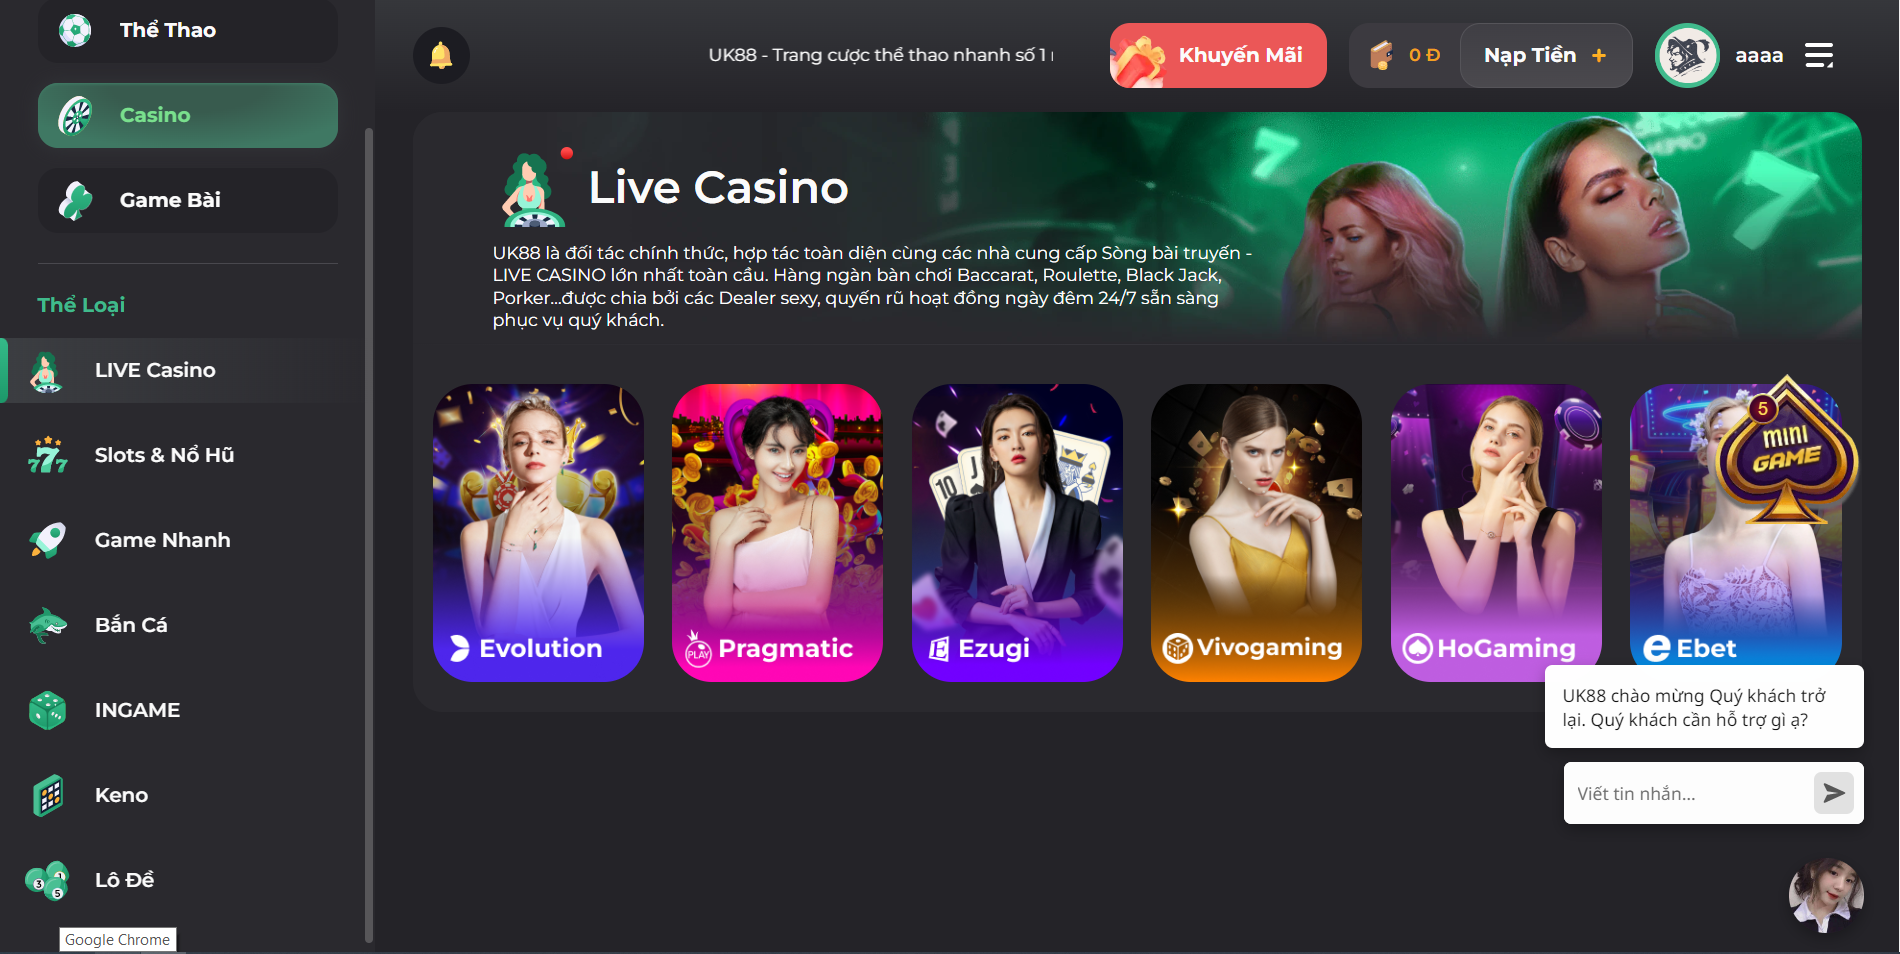 Game bài casino trực tuyến trên nhà cái UK88